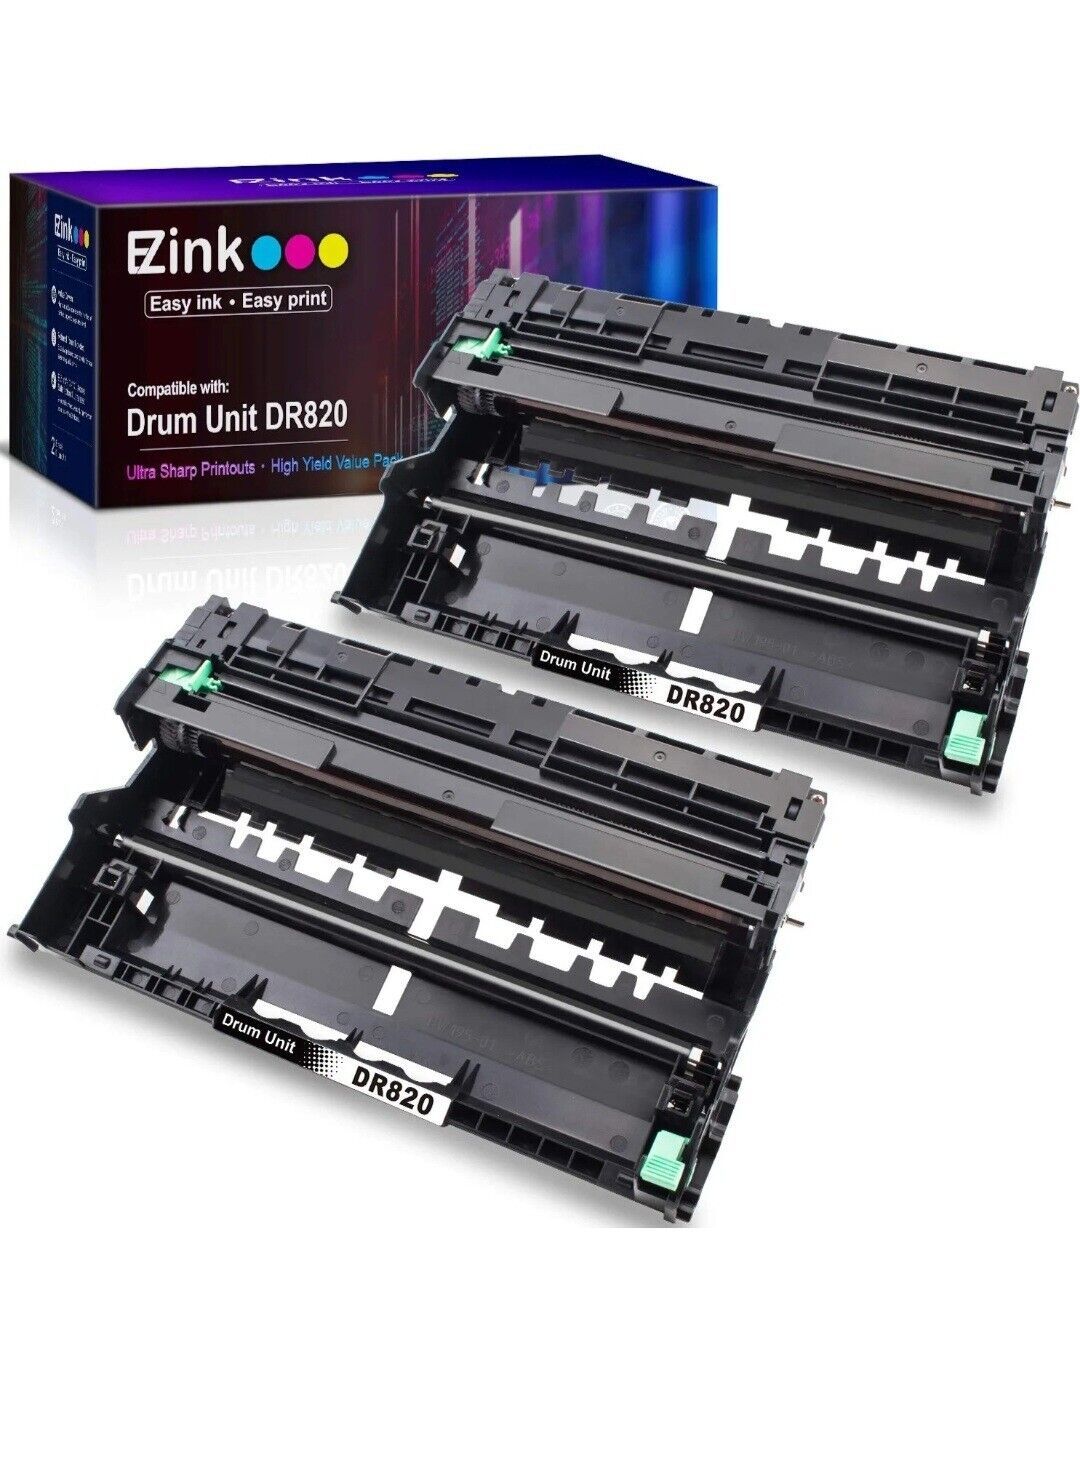 EZINK 2 pack Drum Unit Black Premium DR820 Sealed Unopen For Brother DR820 New